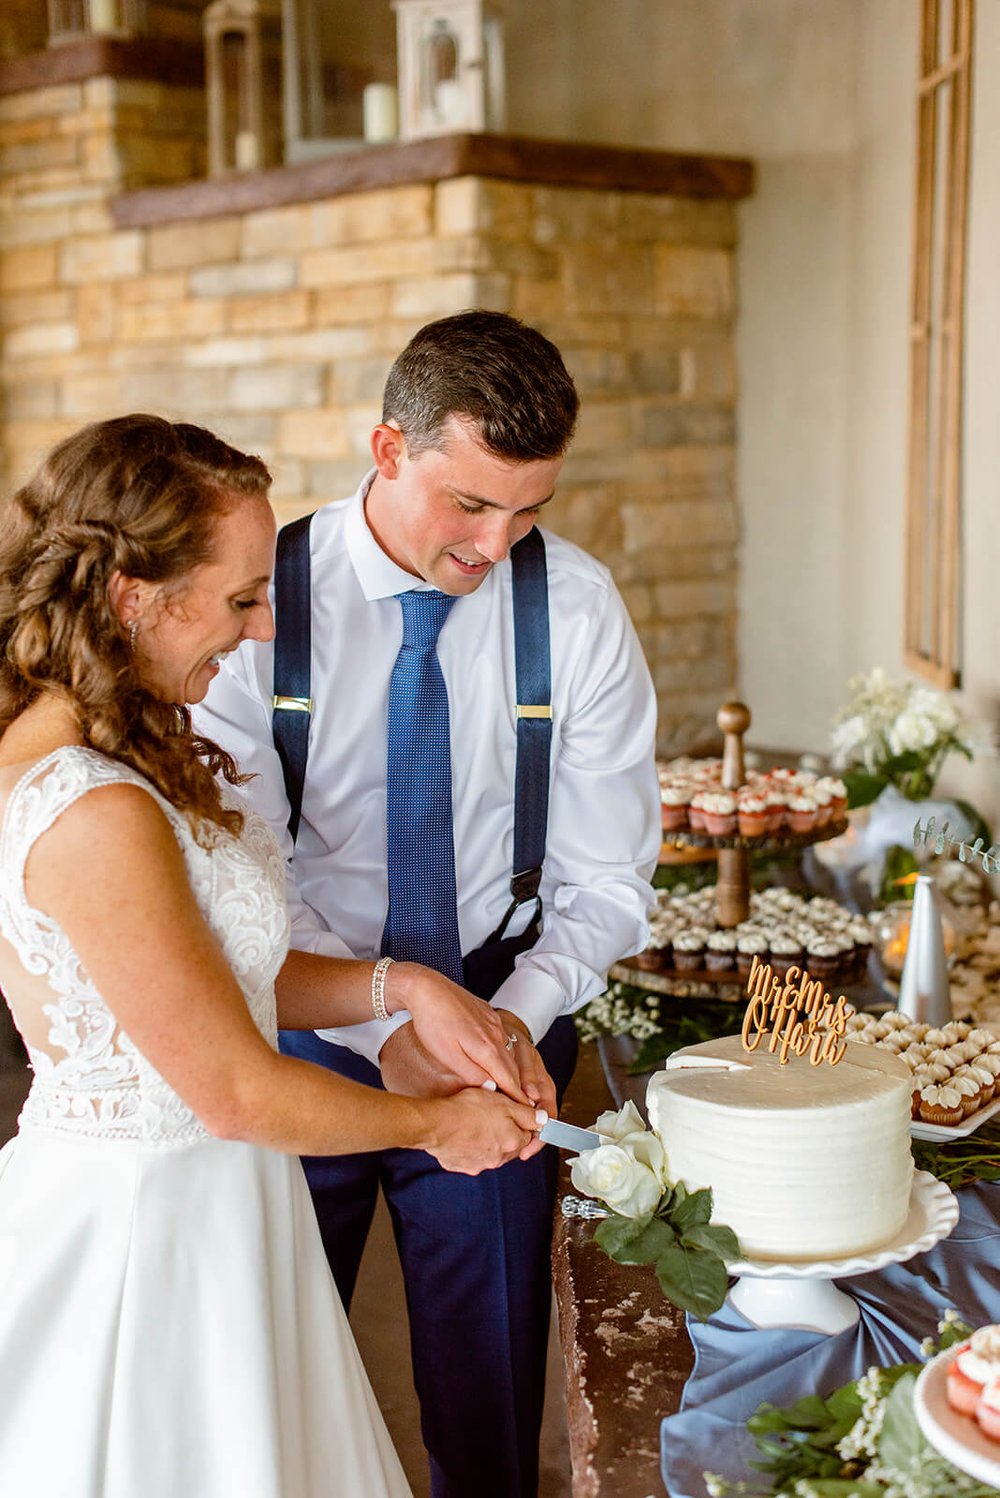 cake cutting wedding photo inspiration